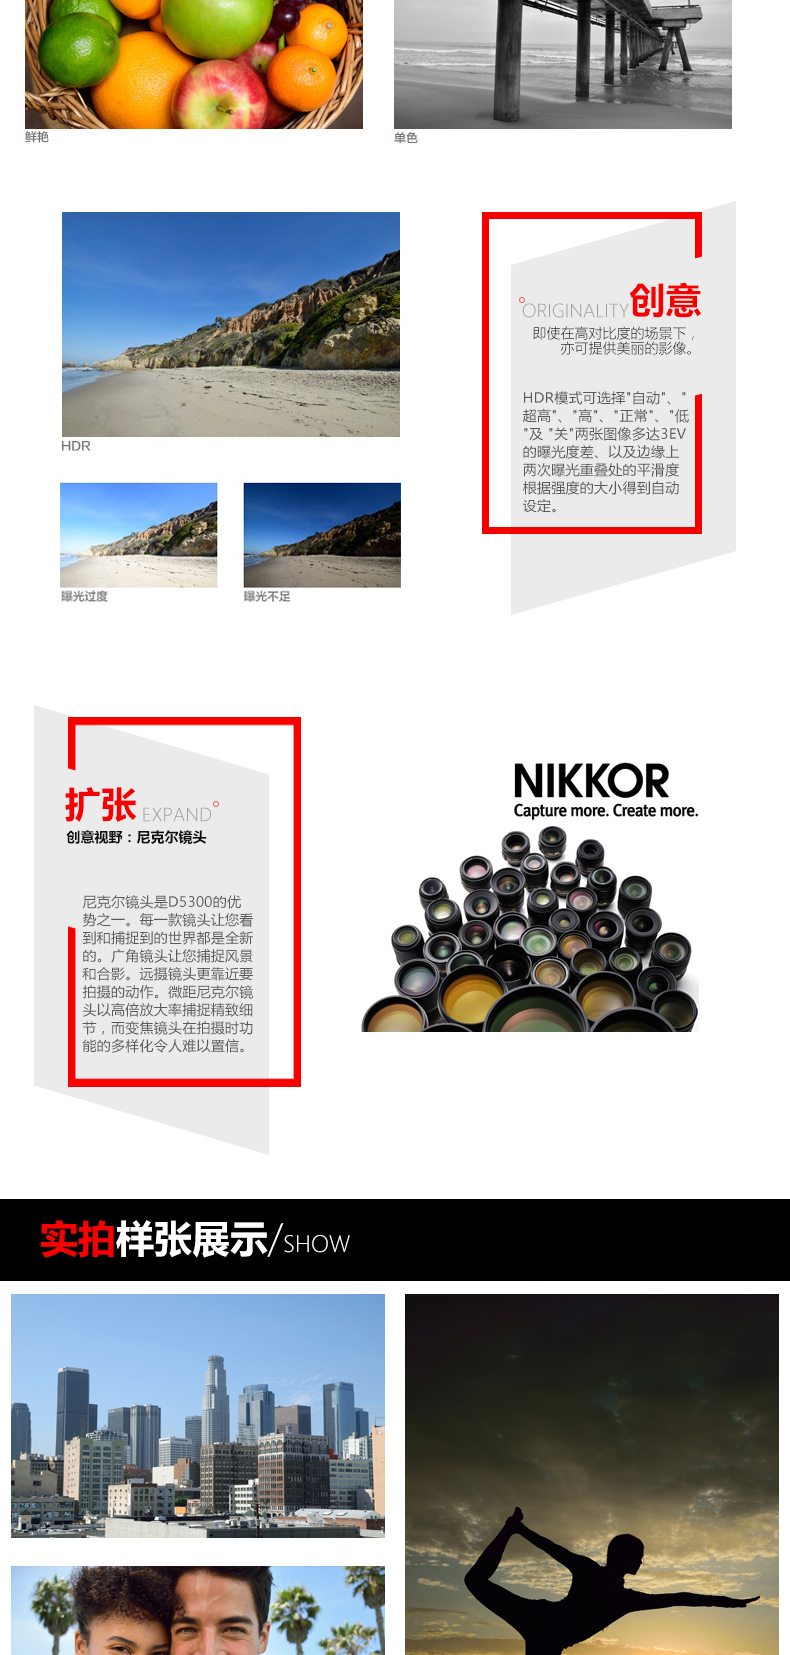 尼康(Nikon) D5300（18-55mm+35mmF1.8G) 双镜头套装 2416万像素 翻转屏 WIFI